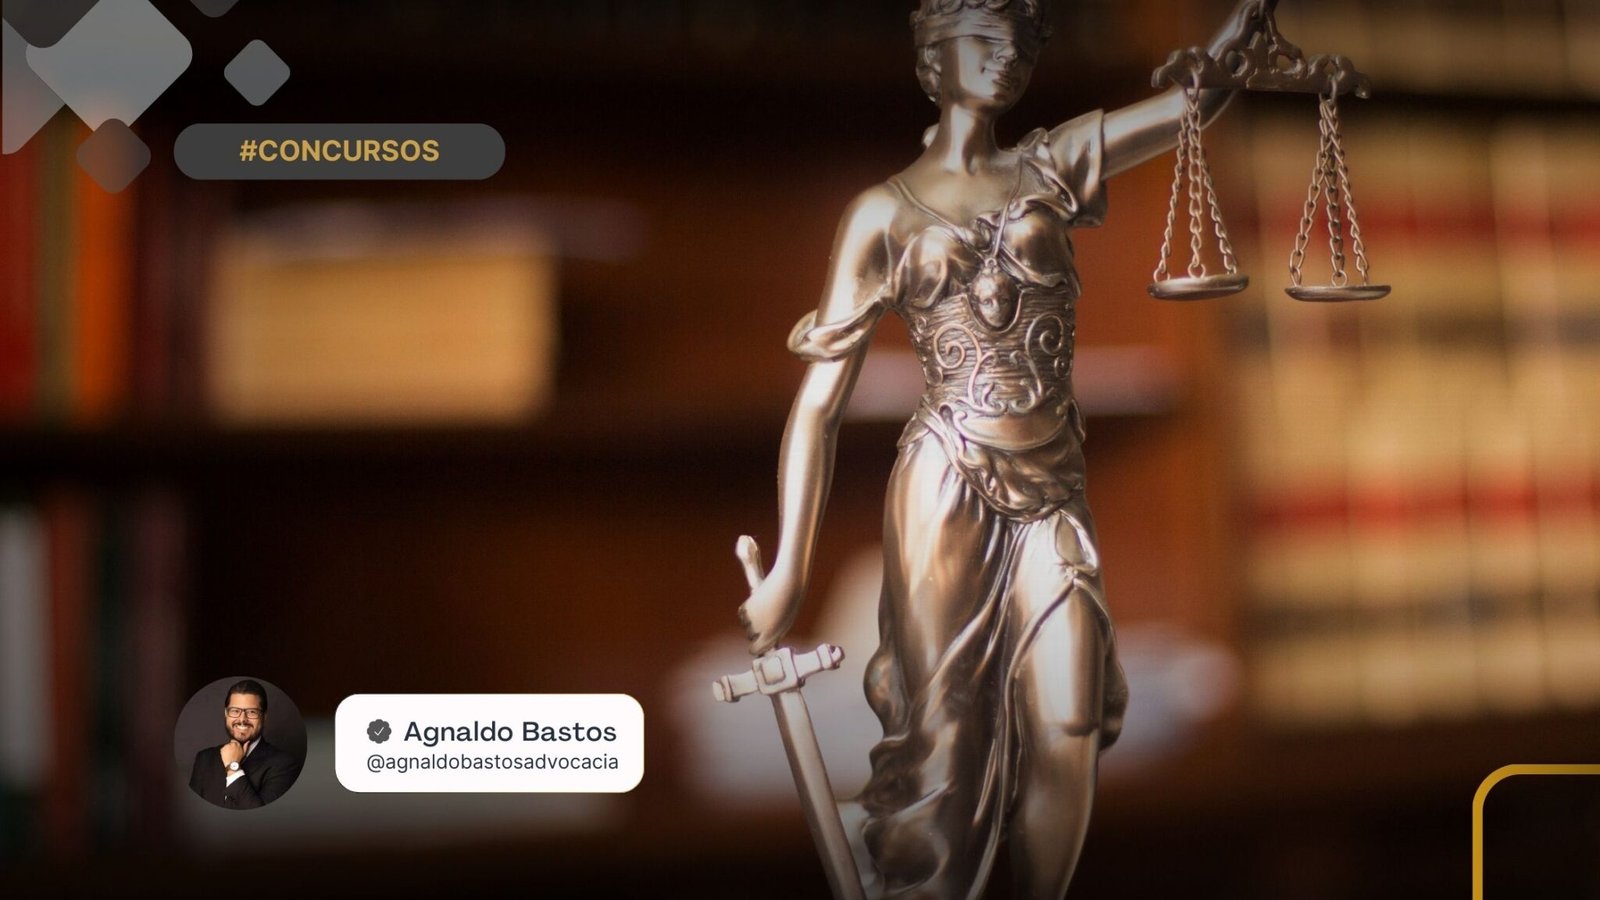 Como se diz “Ação Judicial” em inglês?